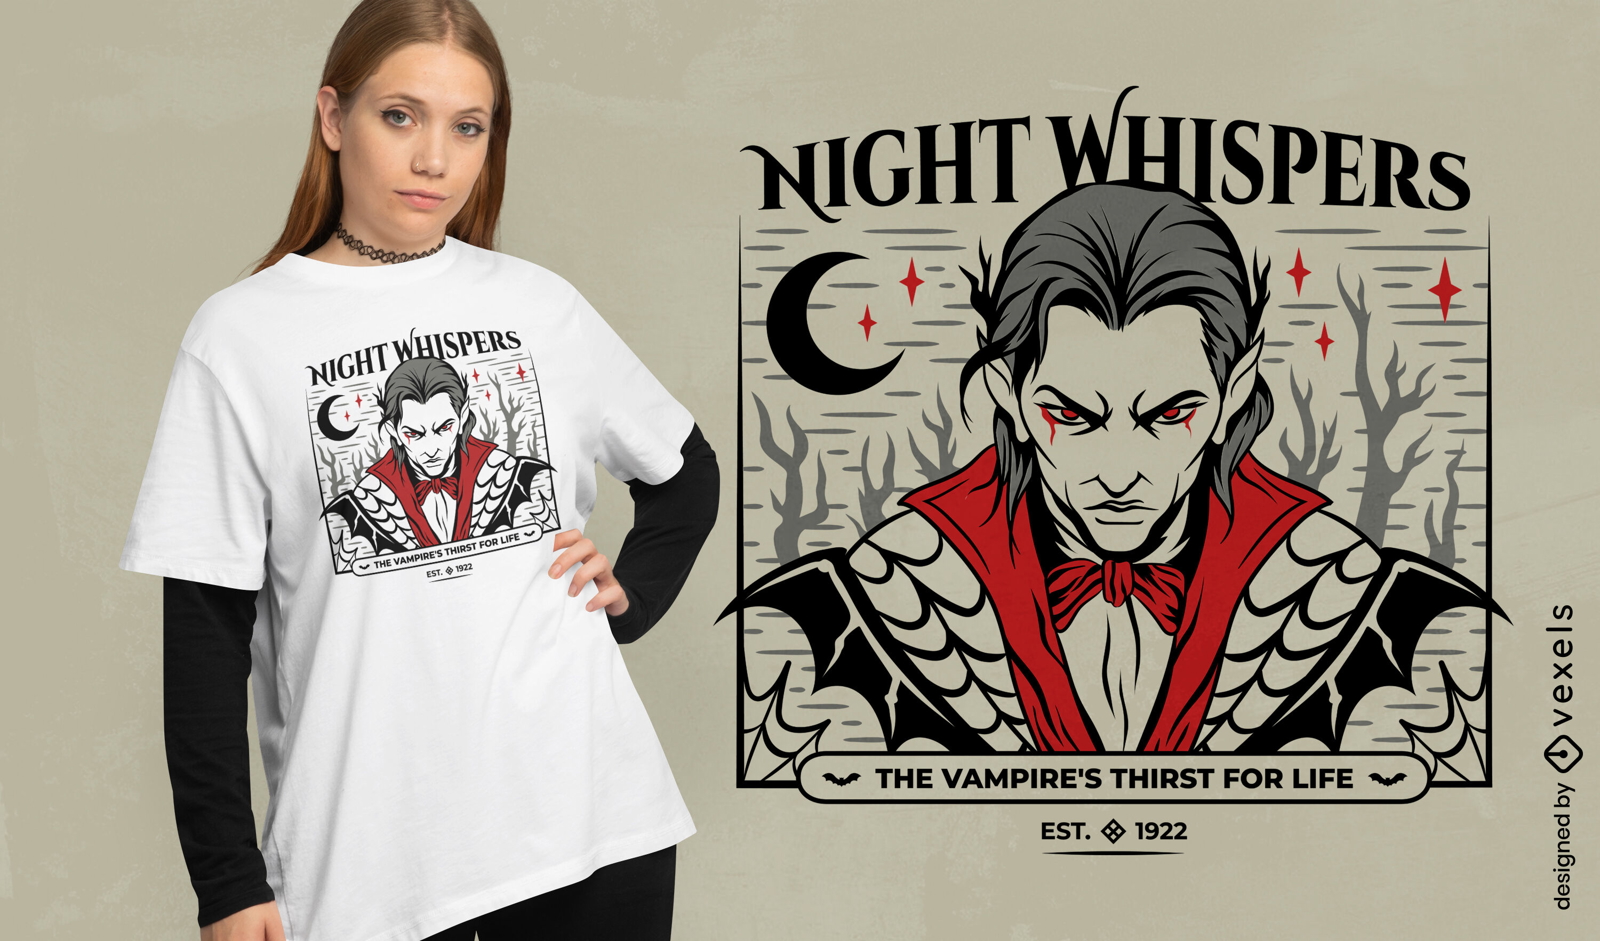 Diseño de camiseta de susurros de noche de vampiros.